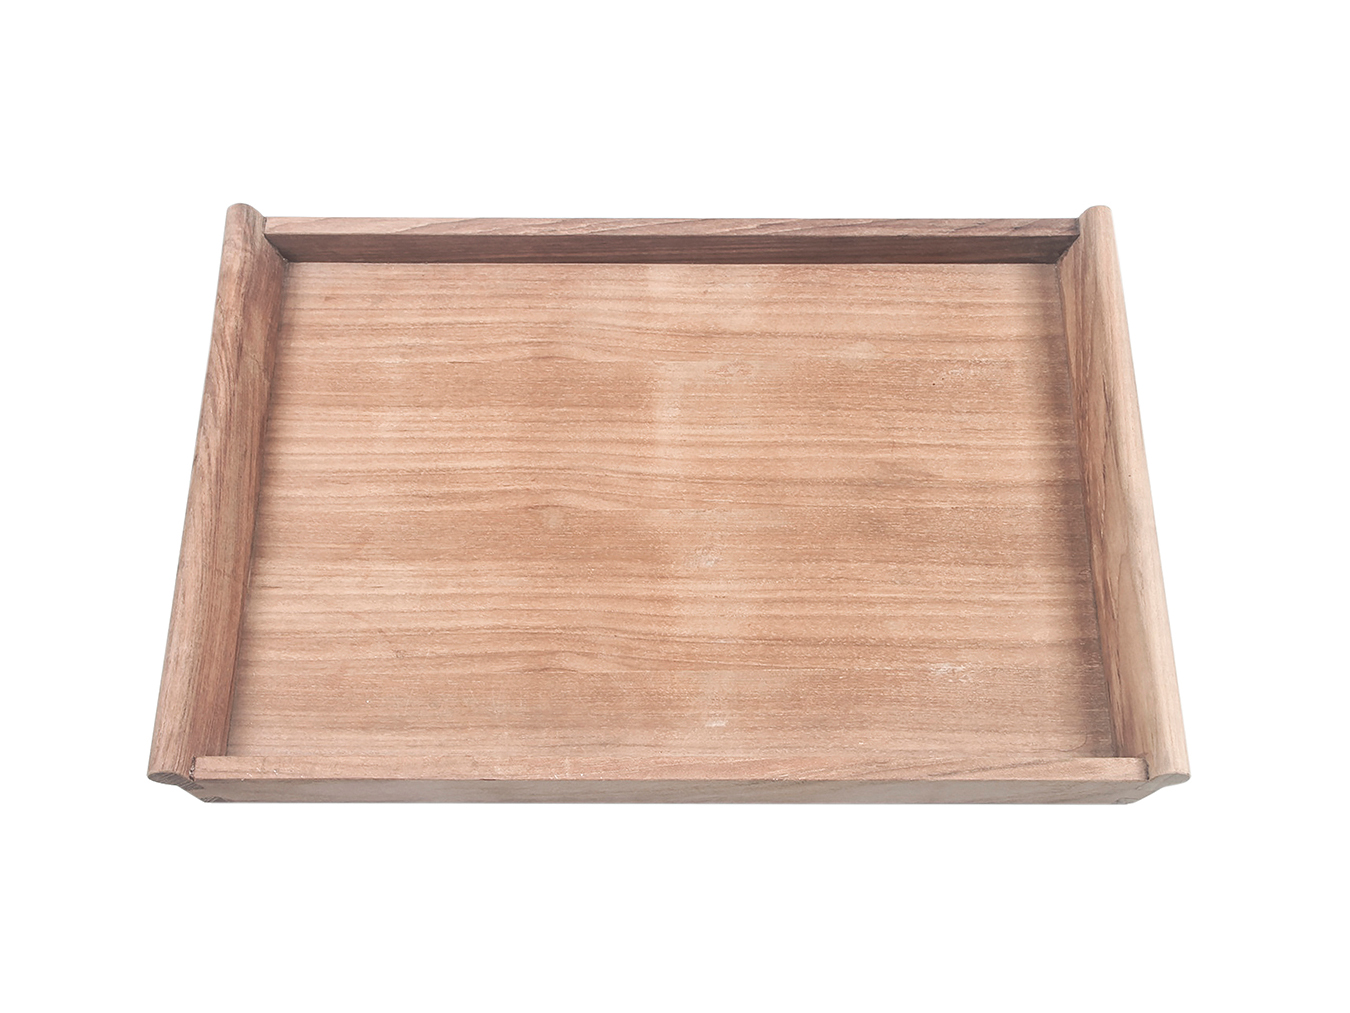 SERVING von | TRAY klappbar Traditional WITH Teak TRAY HolzDesignPur STAND Tabletttisch